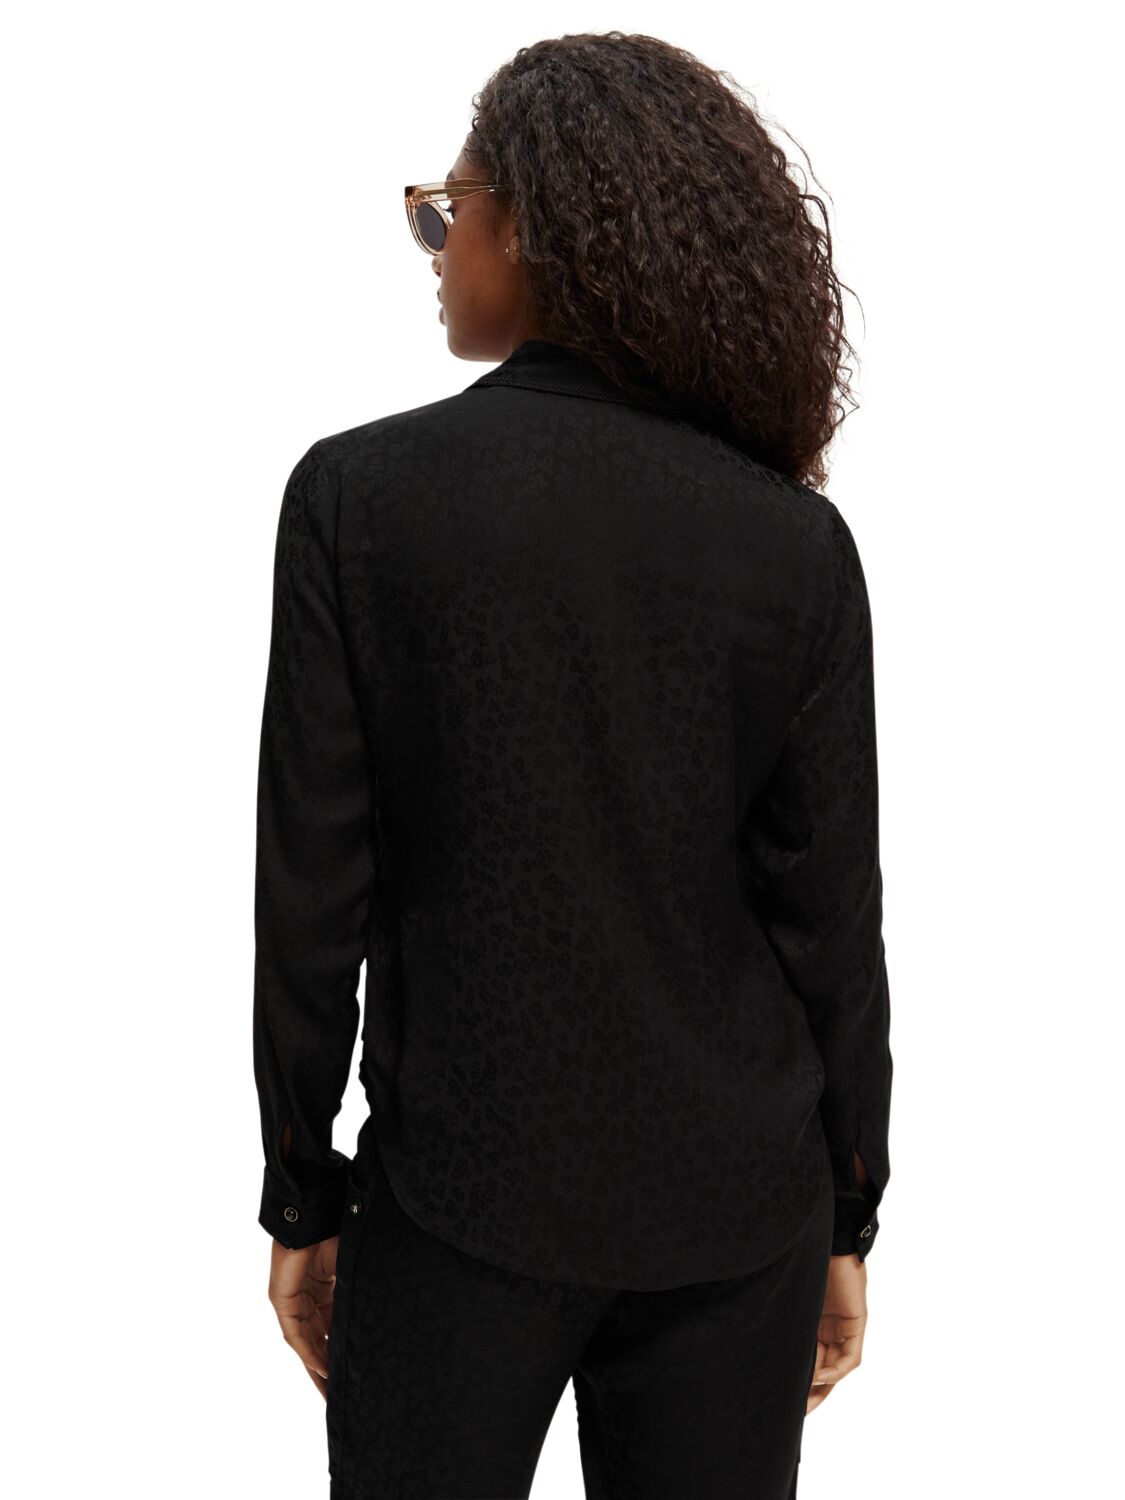 Блузка с длинным рукавом из жаккарда с отделкой вышивкой